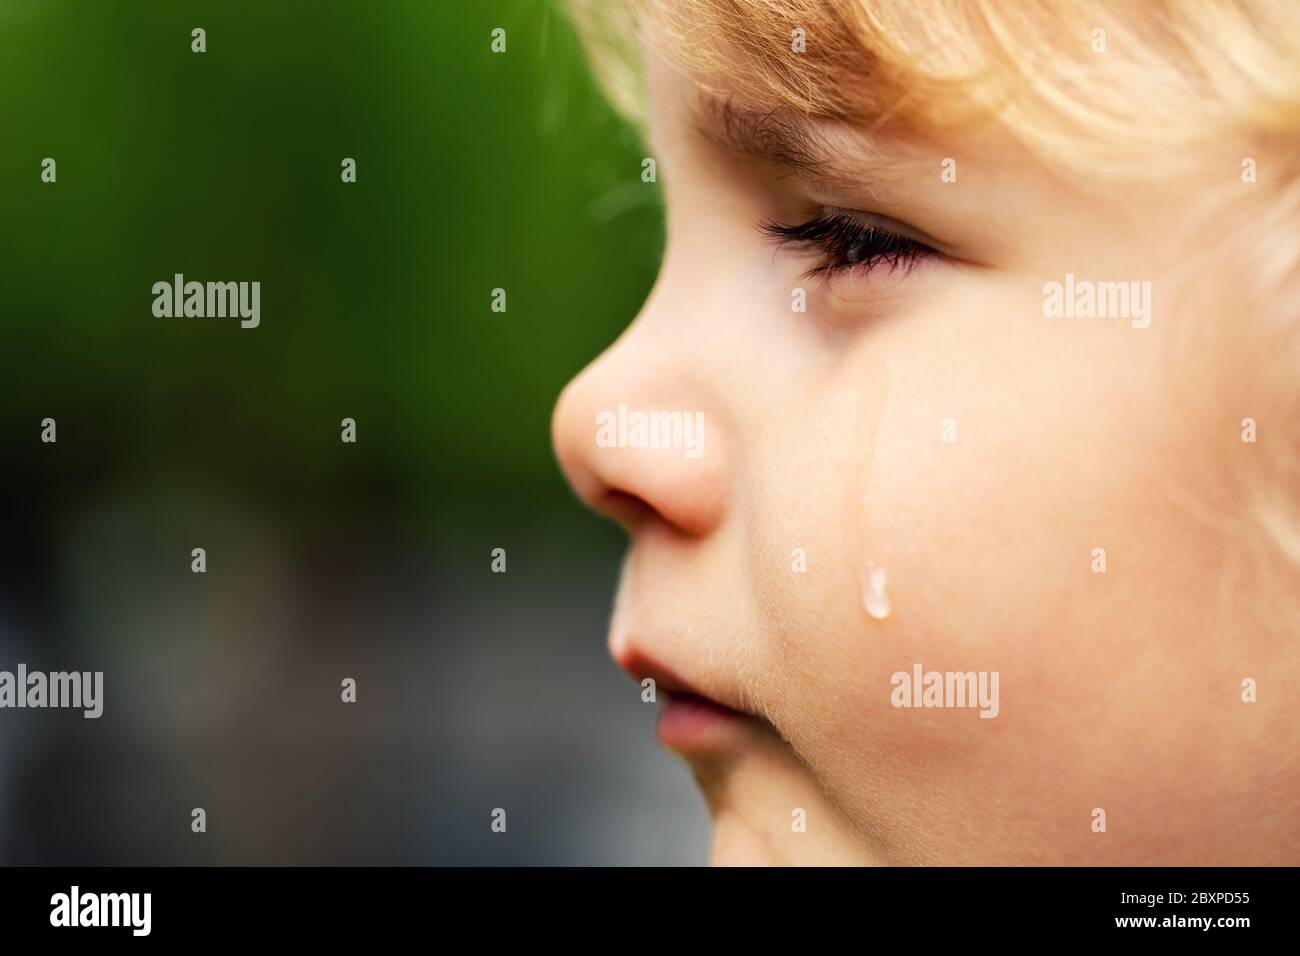 Weinendes trauriges Kind - kleines Mädchen Gesicht mit Träne auf der Wange. Konzept der Kinderrechte und Missbrauch Stockfoto